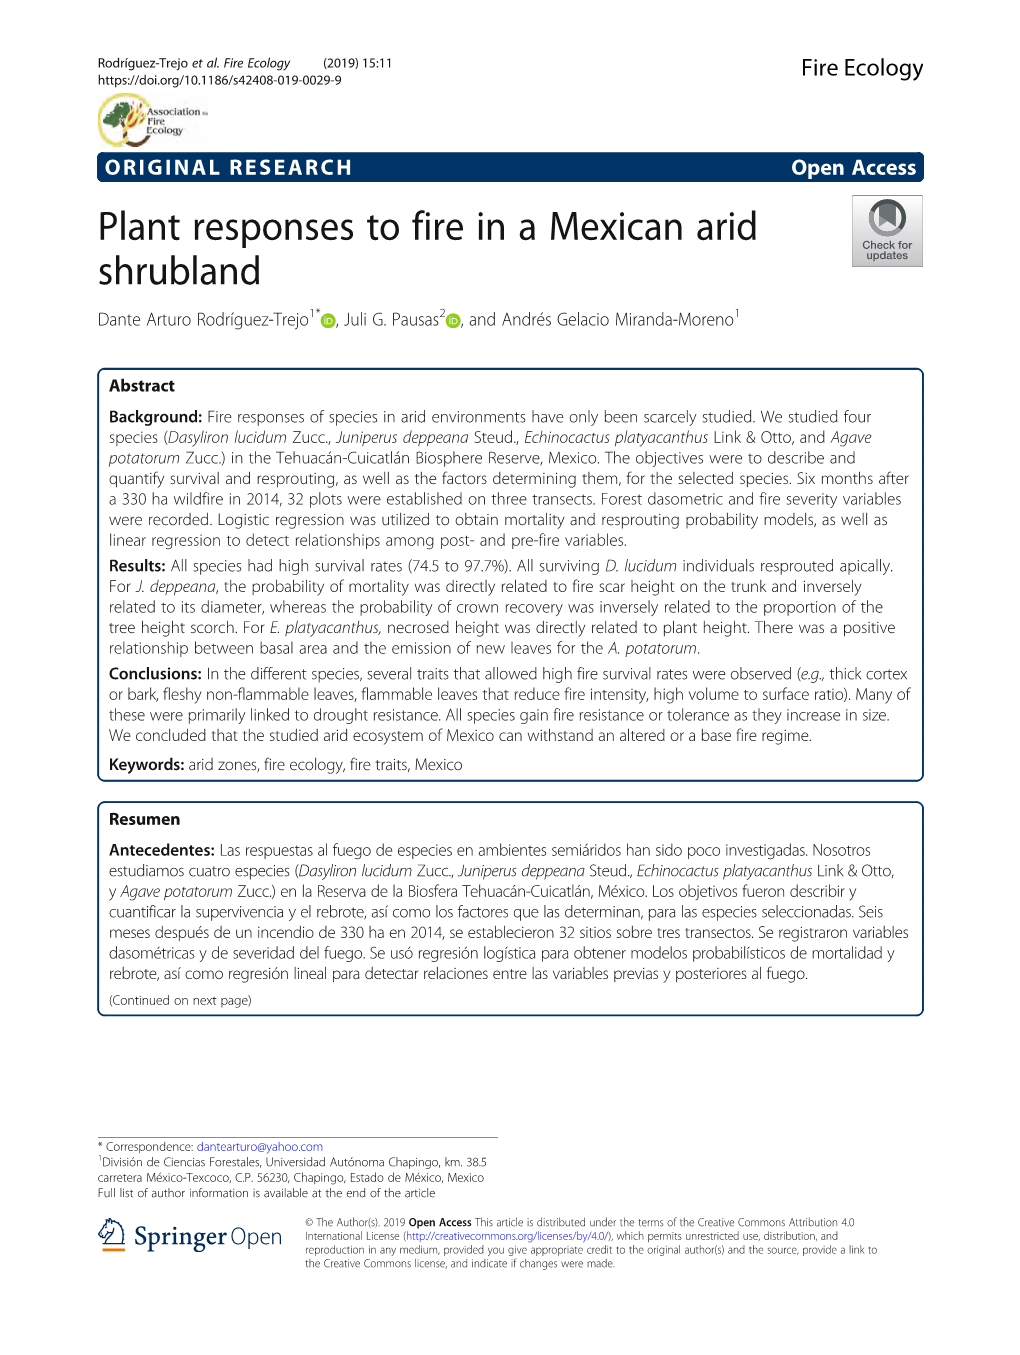 Plant Responses to Fire in a Mexican Arid Shrubland Dante Arturo Rodríguez-Trejo1* , Juli G